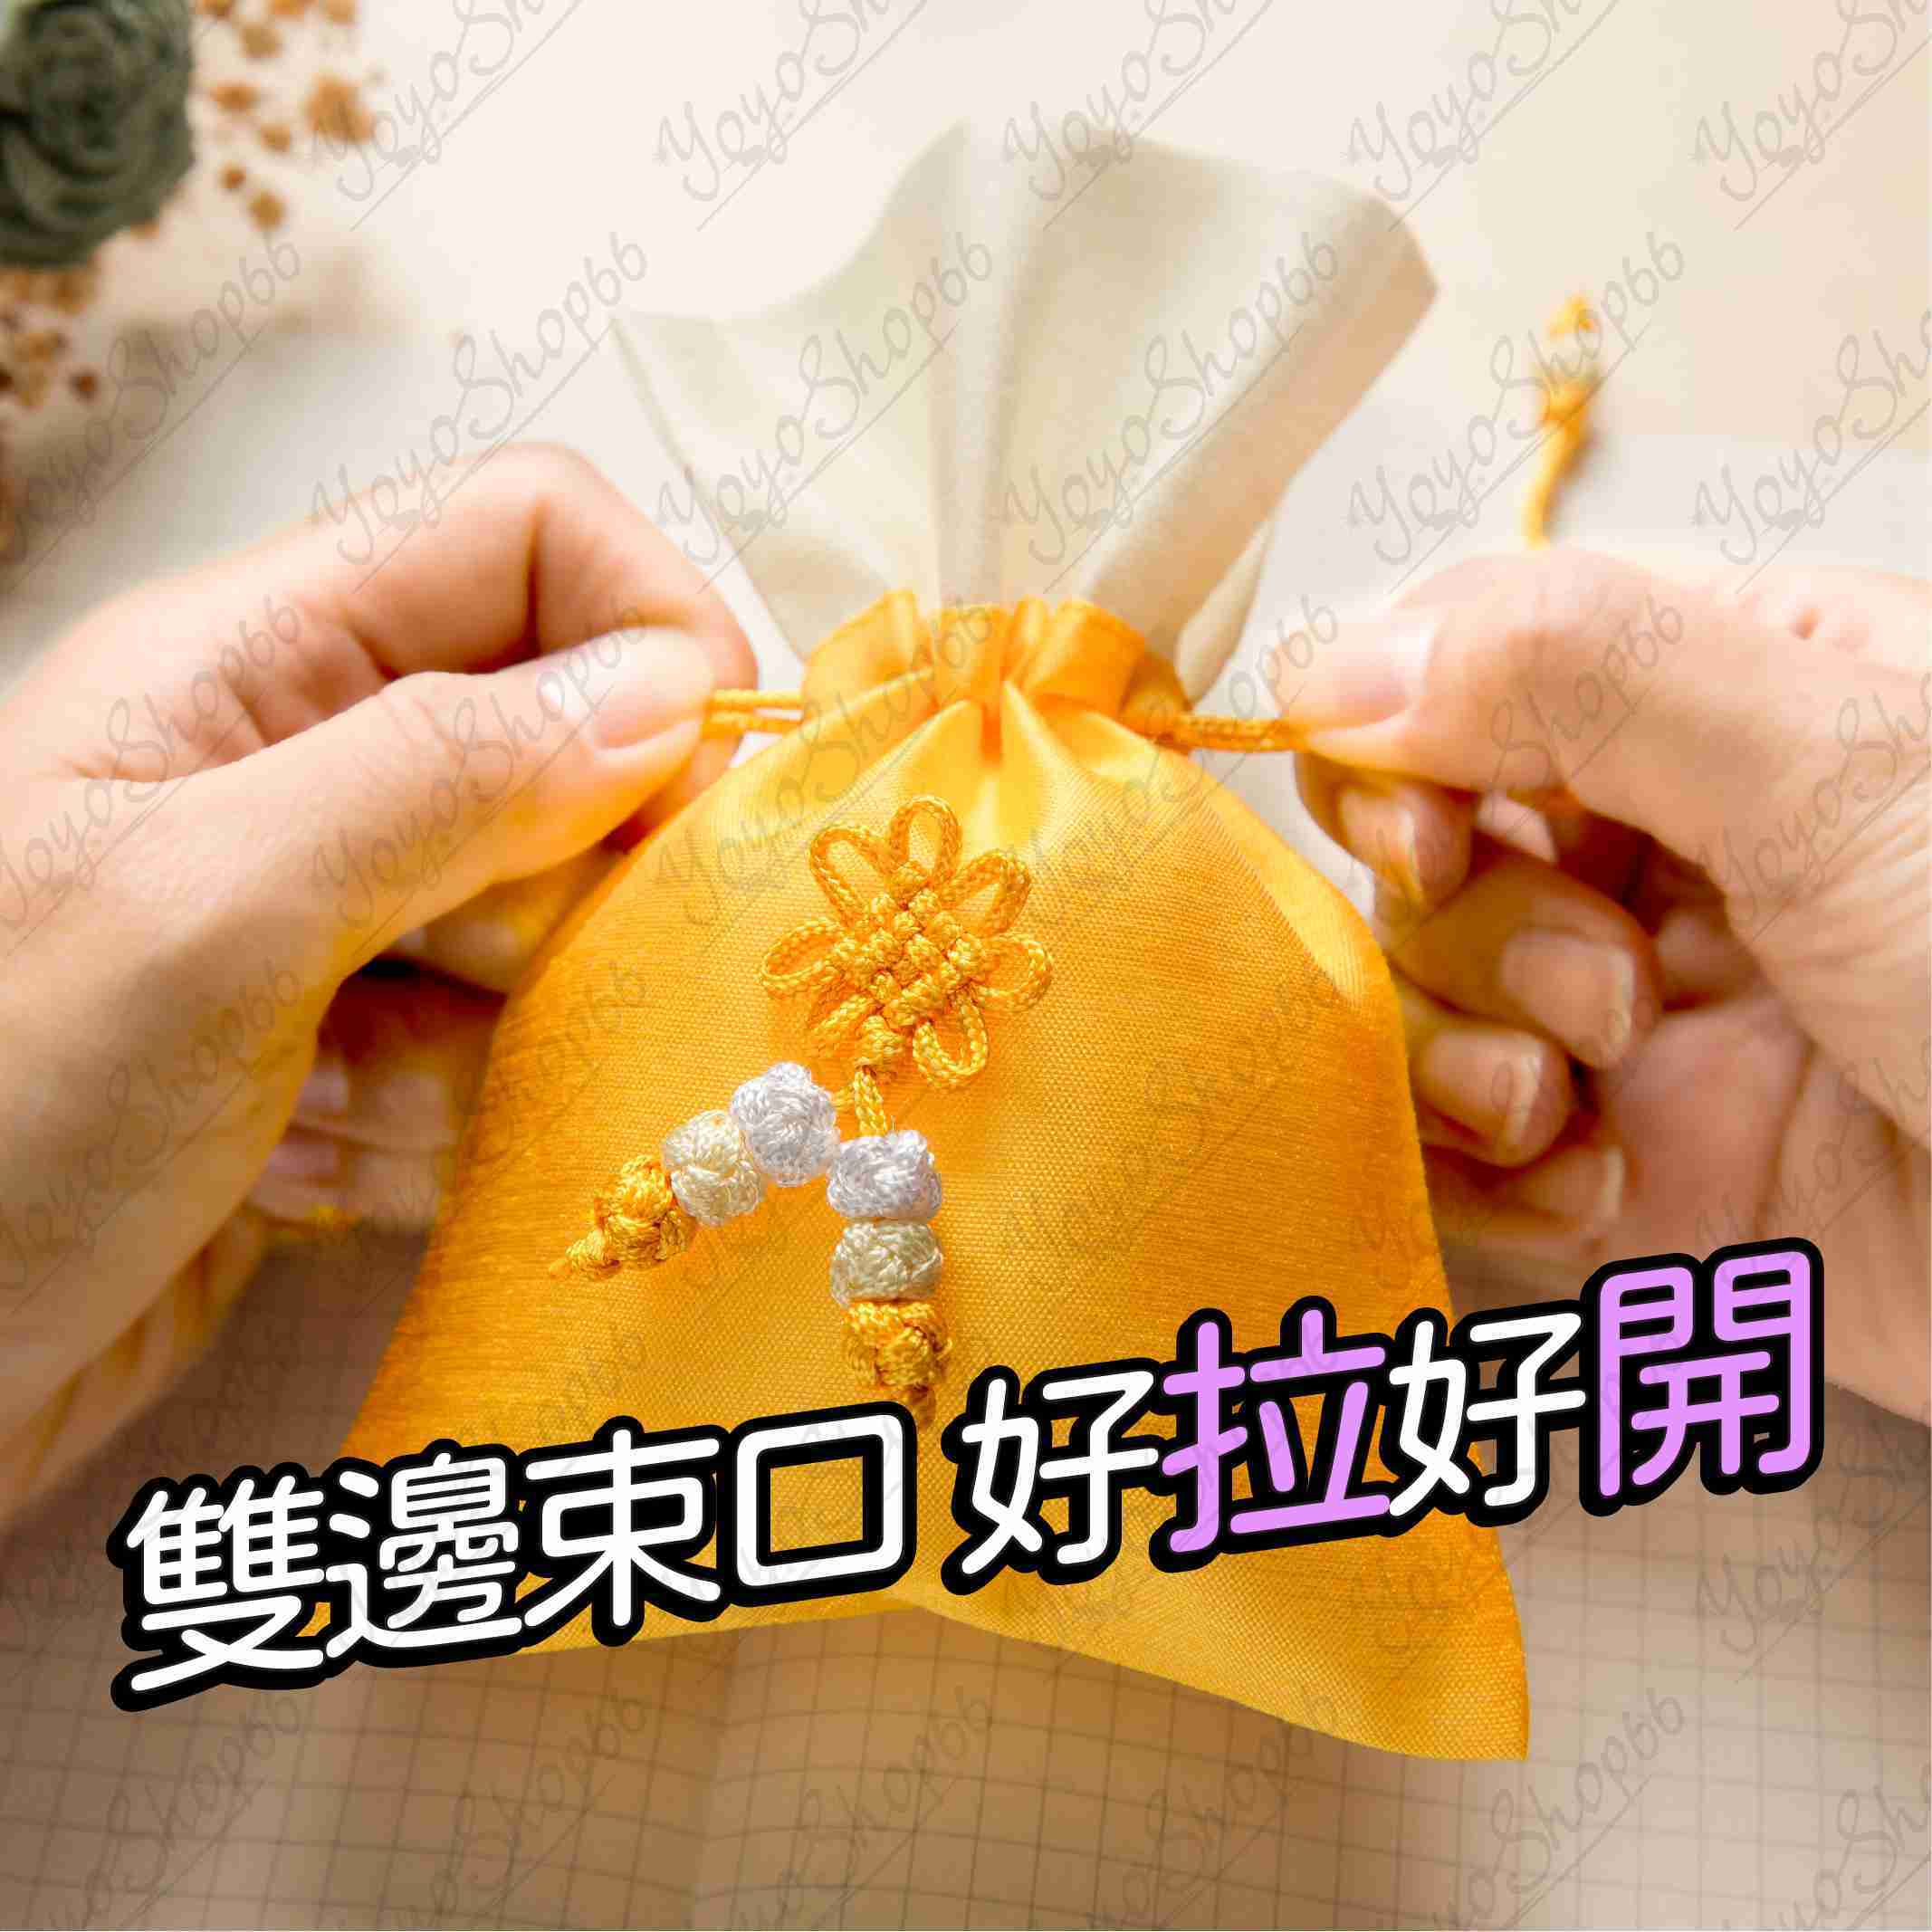 #838 韓版束口袋 挽花香囊 禮品包裝袋 錦囊 珠寶袋 飾品袋 文玩袋 佛珠袋 收納袋 束口袋 抽繩【愛尚生活】